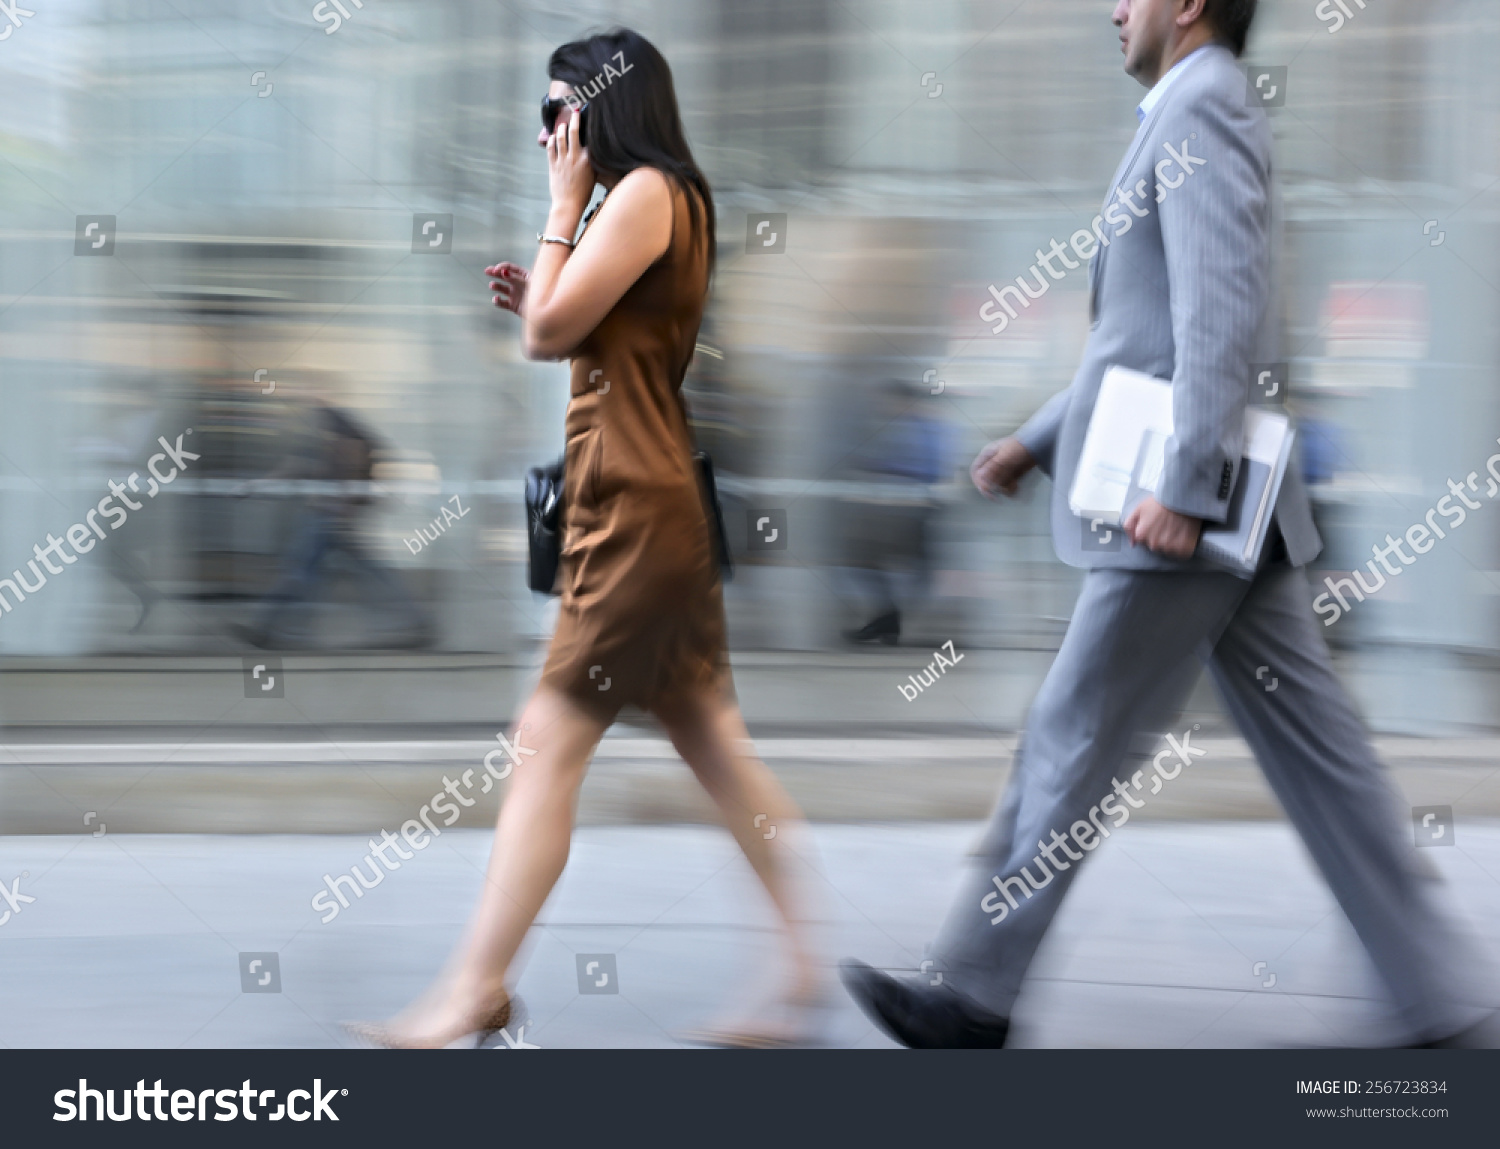 фотографии людей в движении на улице